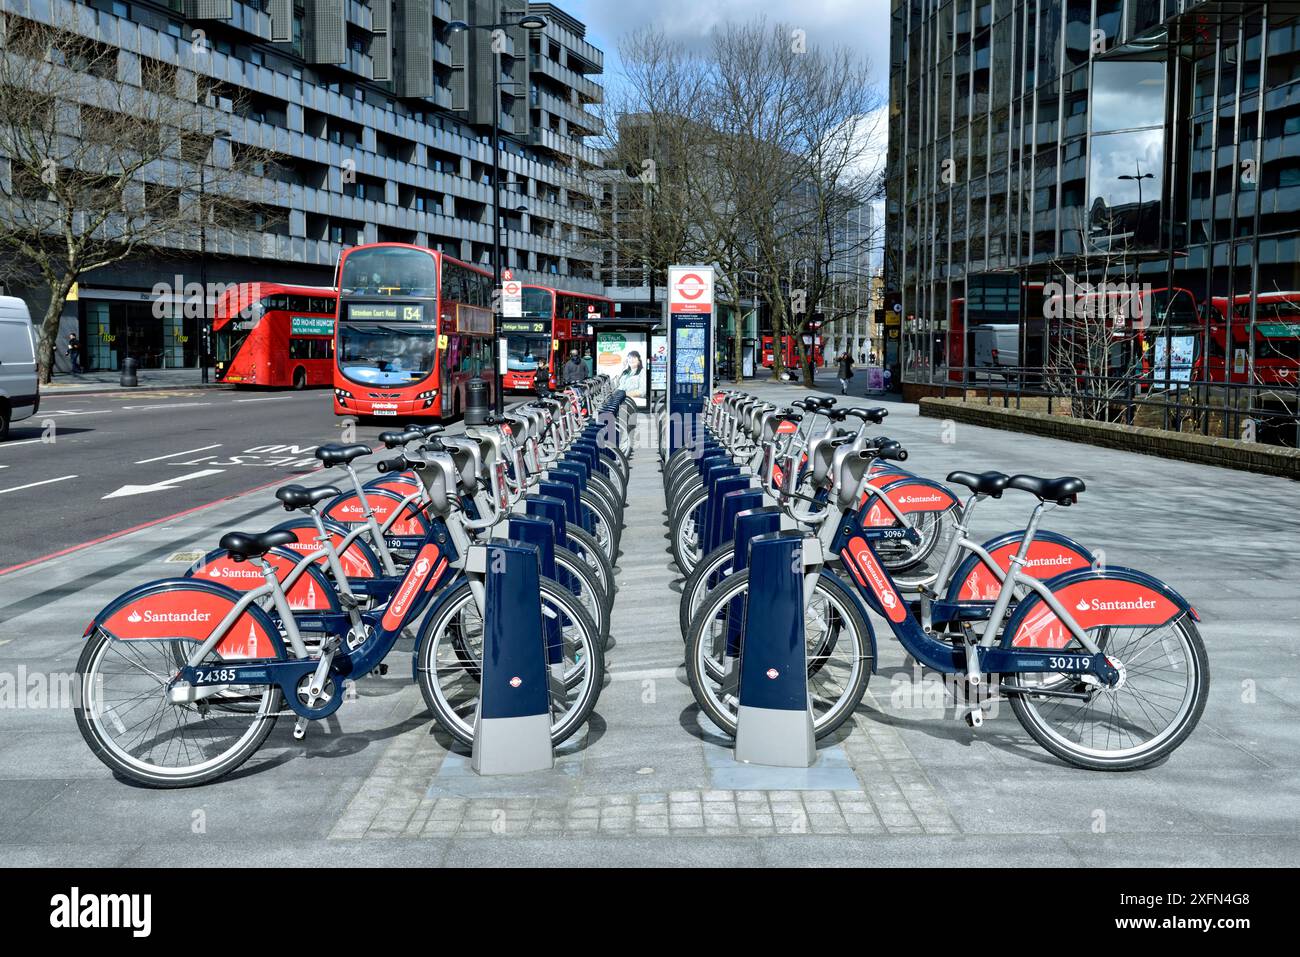 Santander Cycles o Boris Bikes, docking station per noleggio biciclette, angolo tra Hampstead Road e Euston Road, Camden, Inghilterra, Gran Bretagna, Regno Unito, marzo 2016. Foto Stock